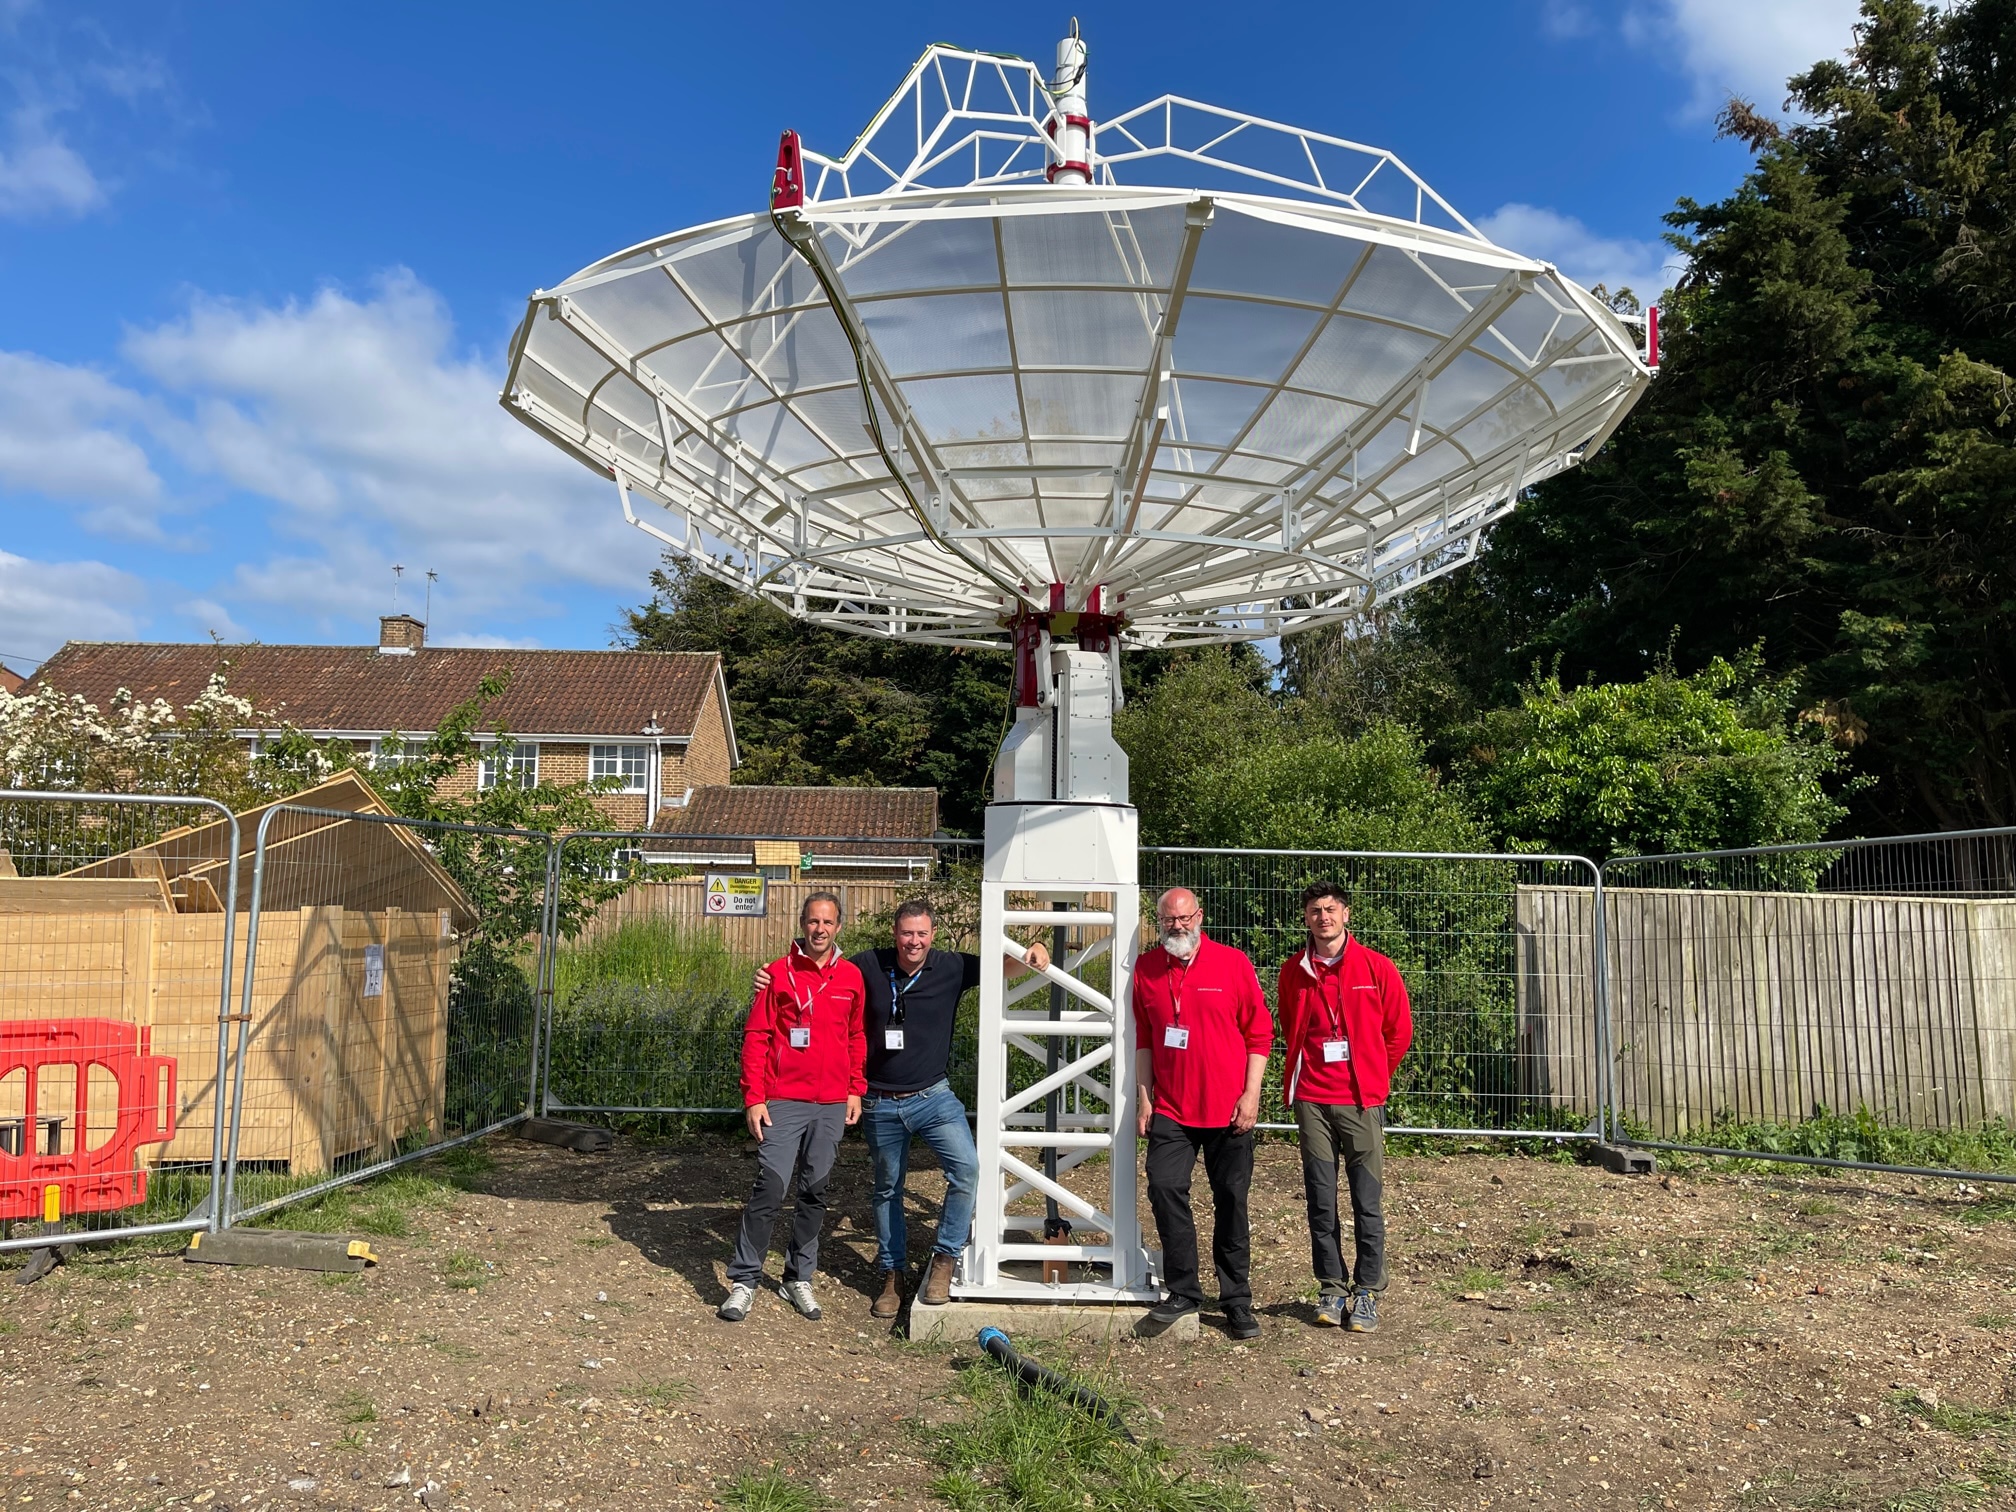 SPIDER 500A radio telescope installed in Eton College, UK